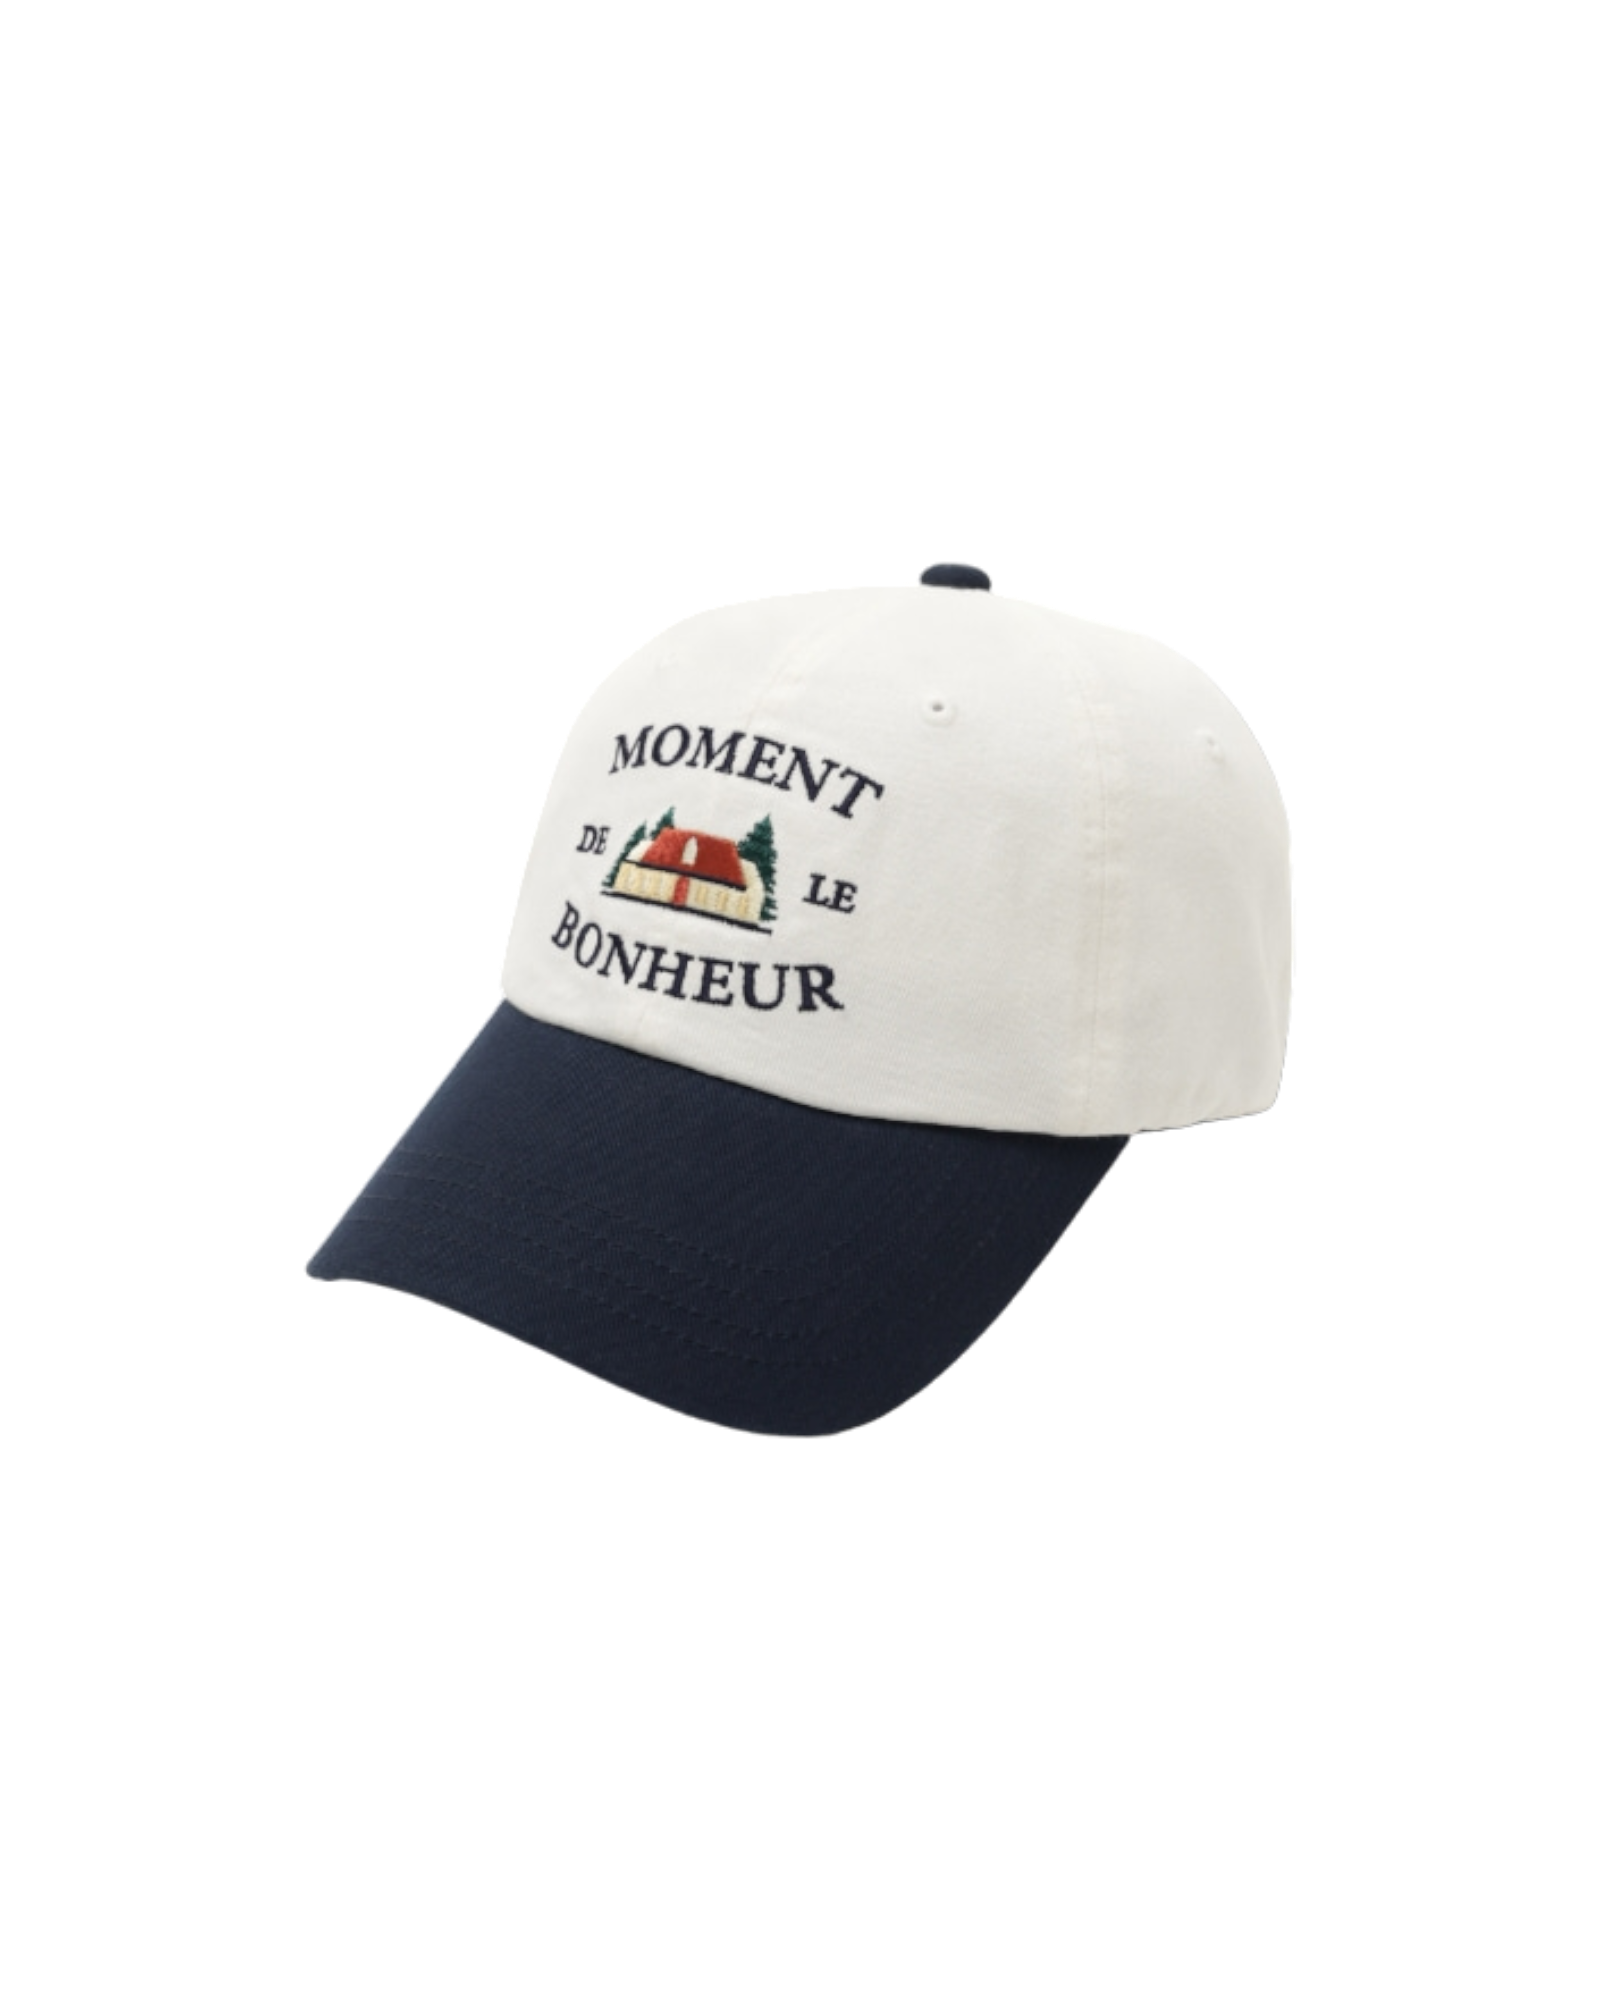 Bonheur Ballcap In Ivory / Navy